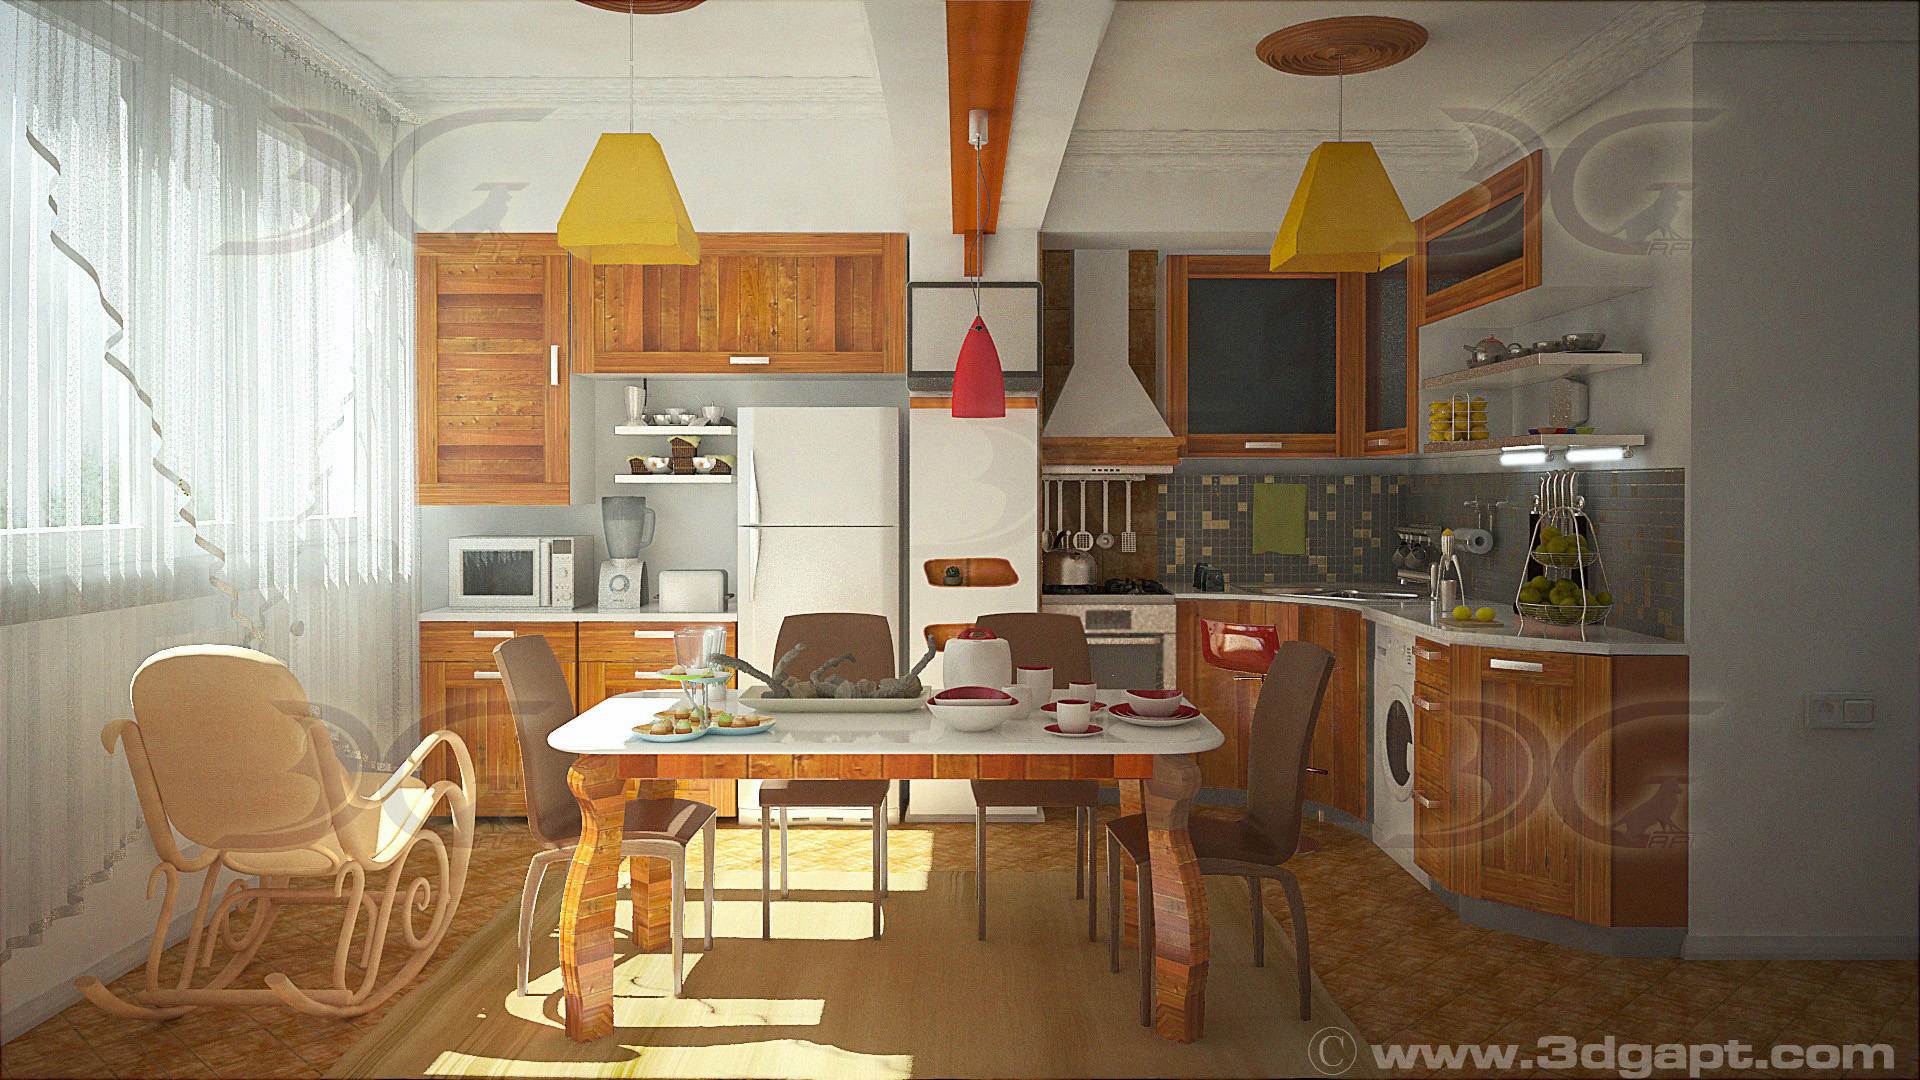 Architecture Interior Kitchen 3versions 12